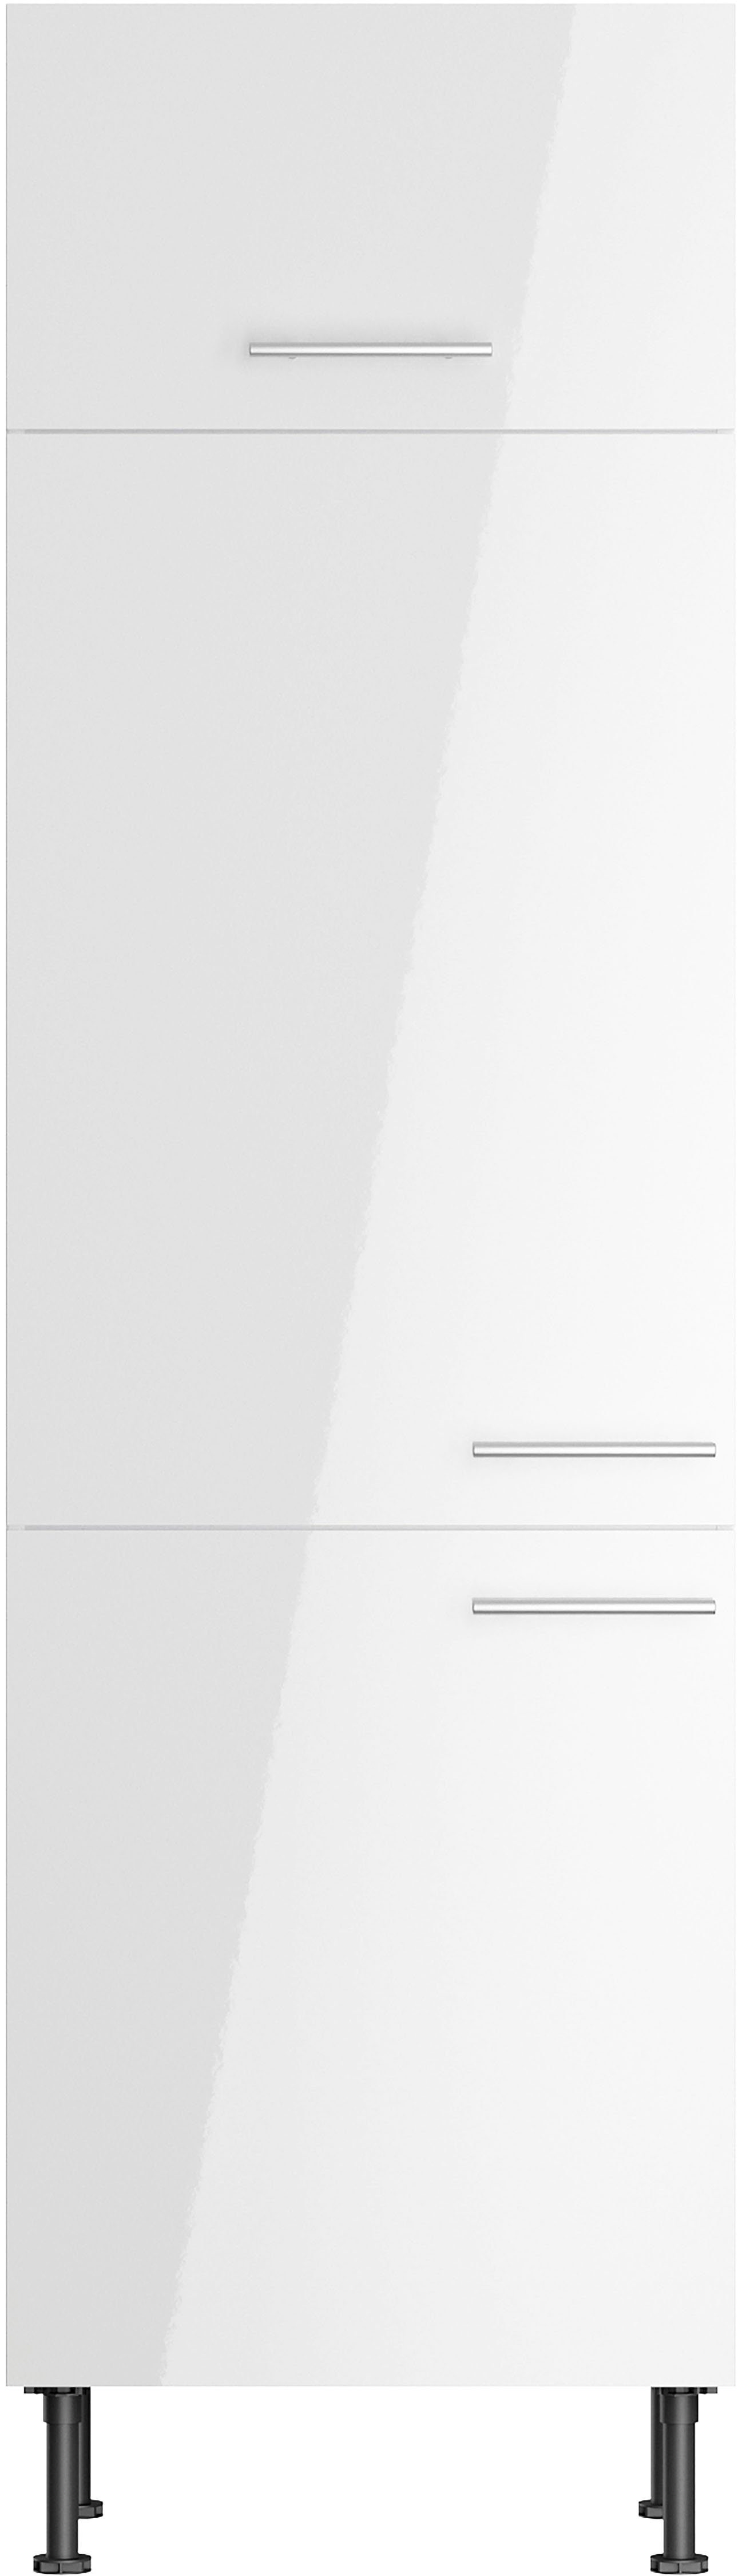 OPTIFIT Kühlumbauschrank Klara 60 weiß lackiert/weiß cm Breite